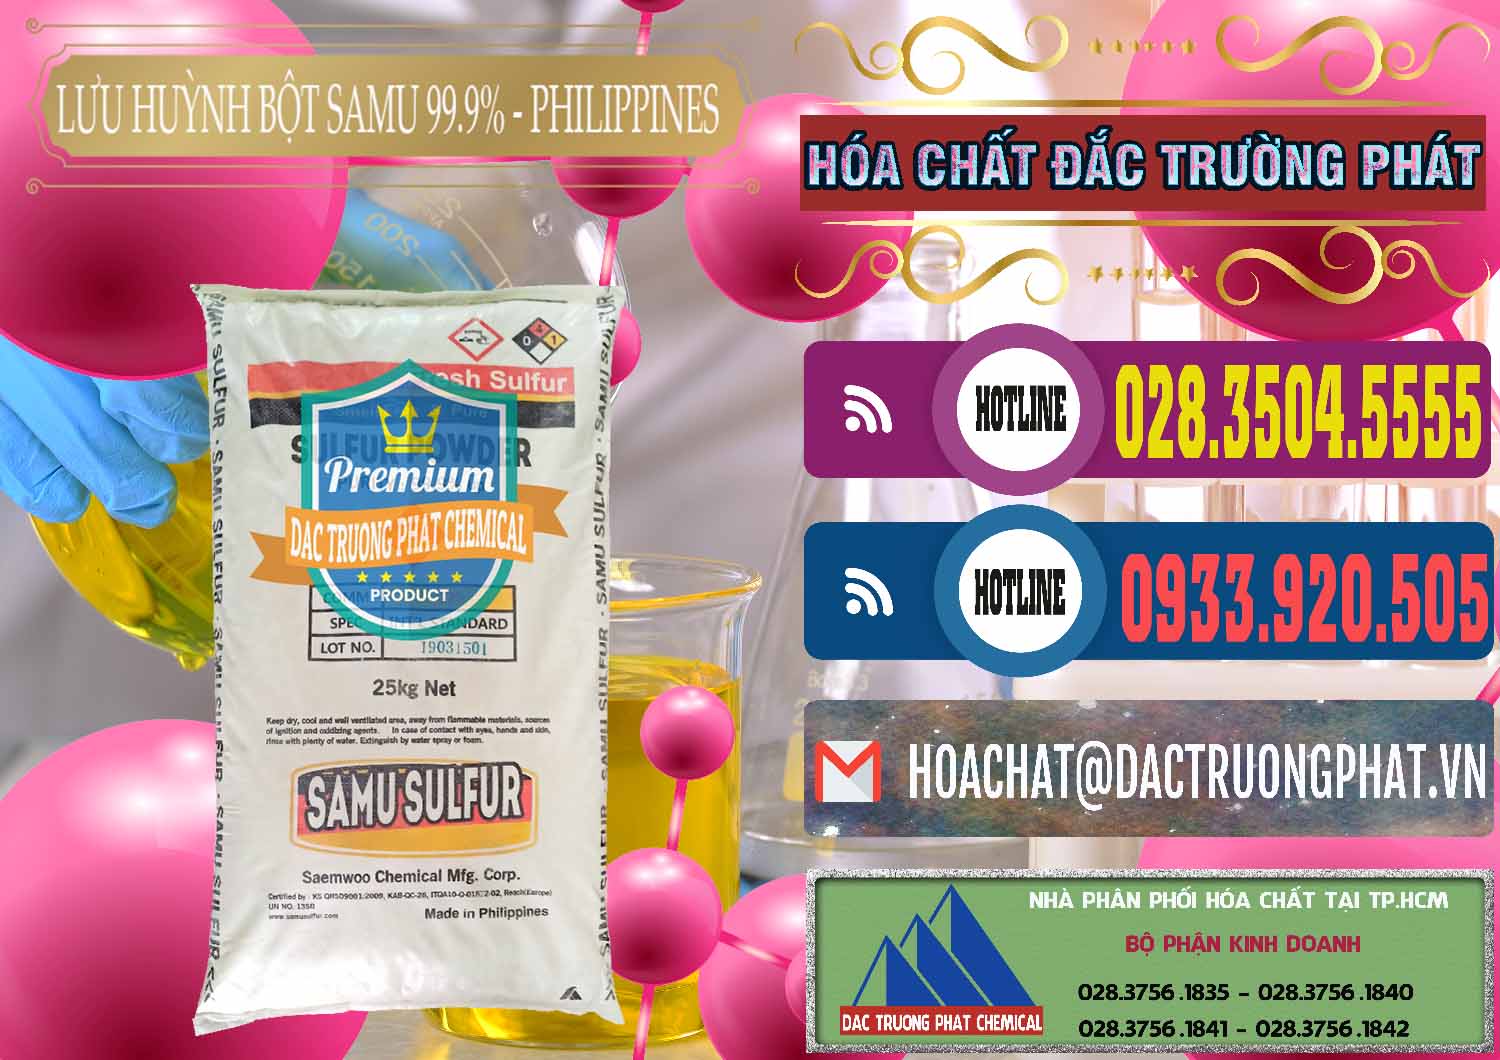 Công ty chuyên bán & phân phối Lưu huỳnh Bột - Sulfur Powder Samu Philippines - 0201 - Cty chuyên phân phối và kinh doanh hóa chất tại TP.HCM - muabanhoachat.com.vn